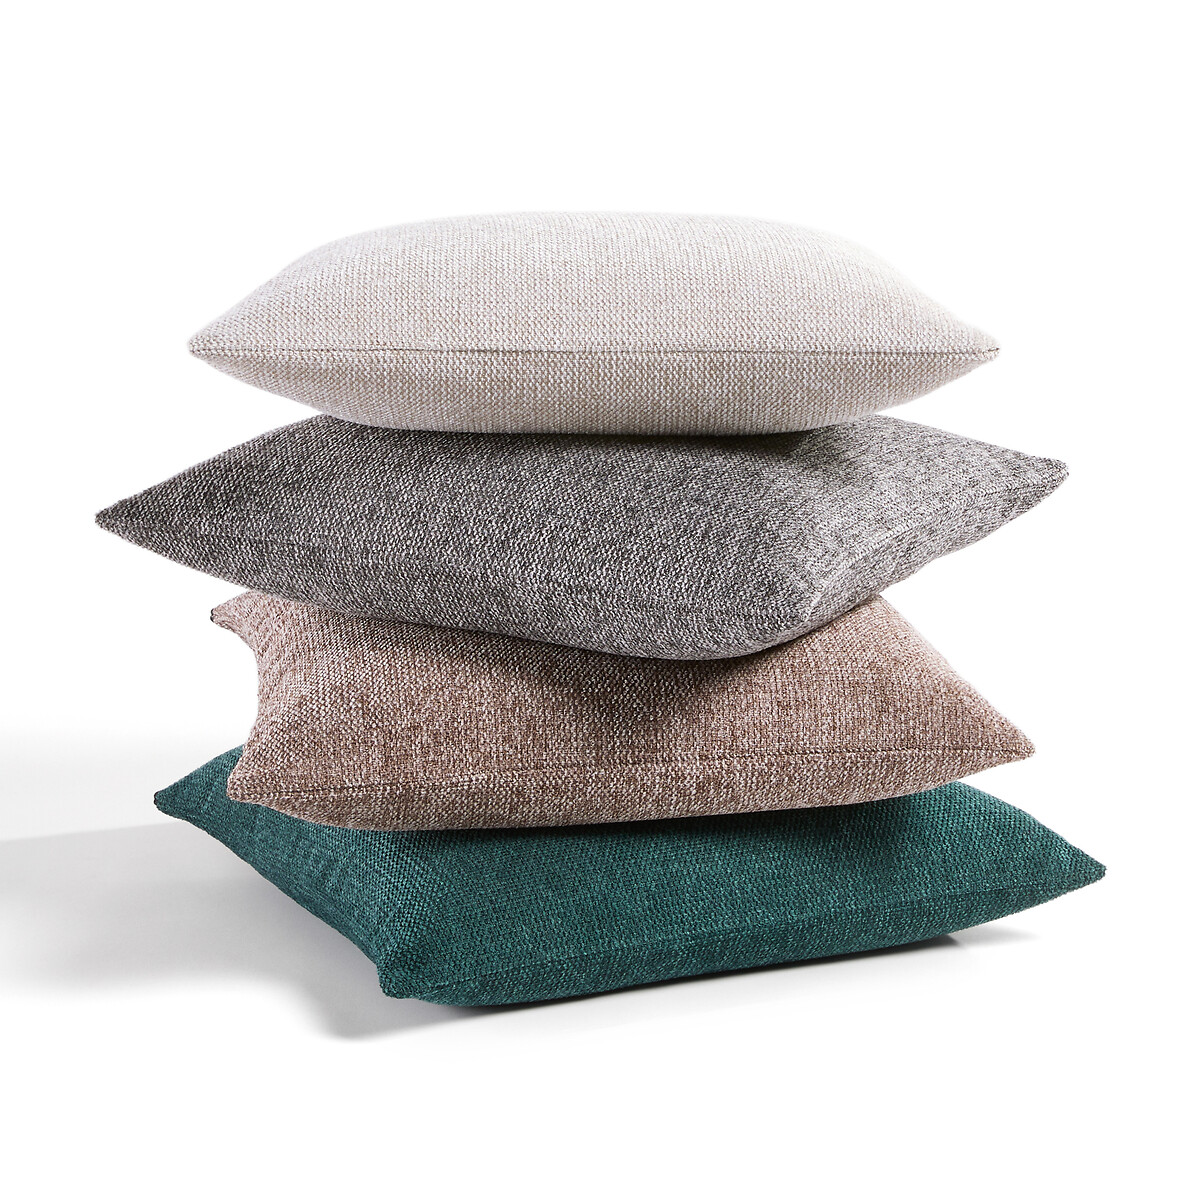 Fodera per cuscino federa Auto gioco tappeto grigio 40 x 40 cm cuscino per bambini bambino cuscino 100% cotone gioco cuscino 